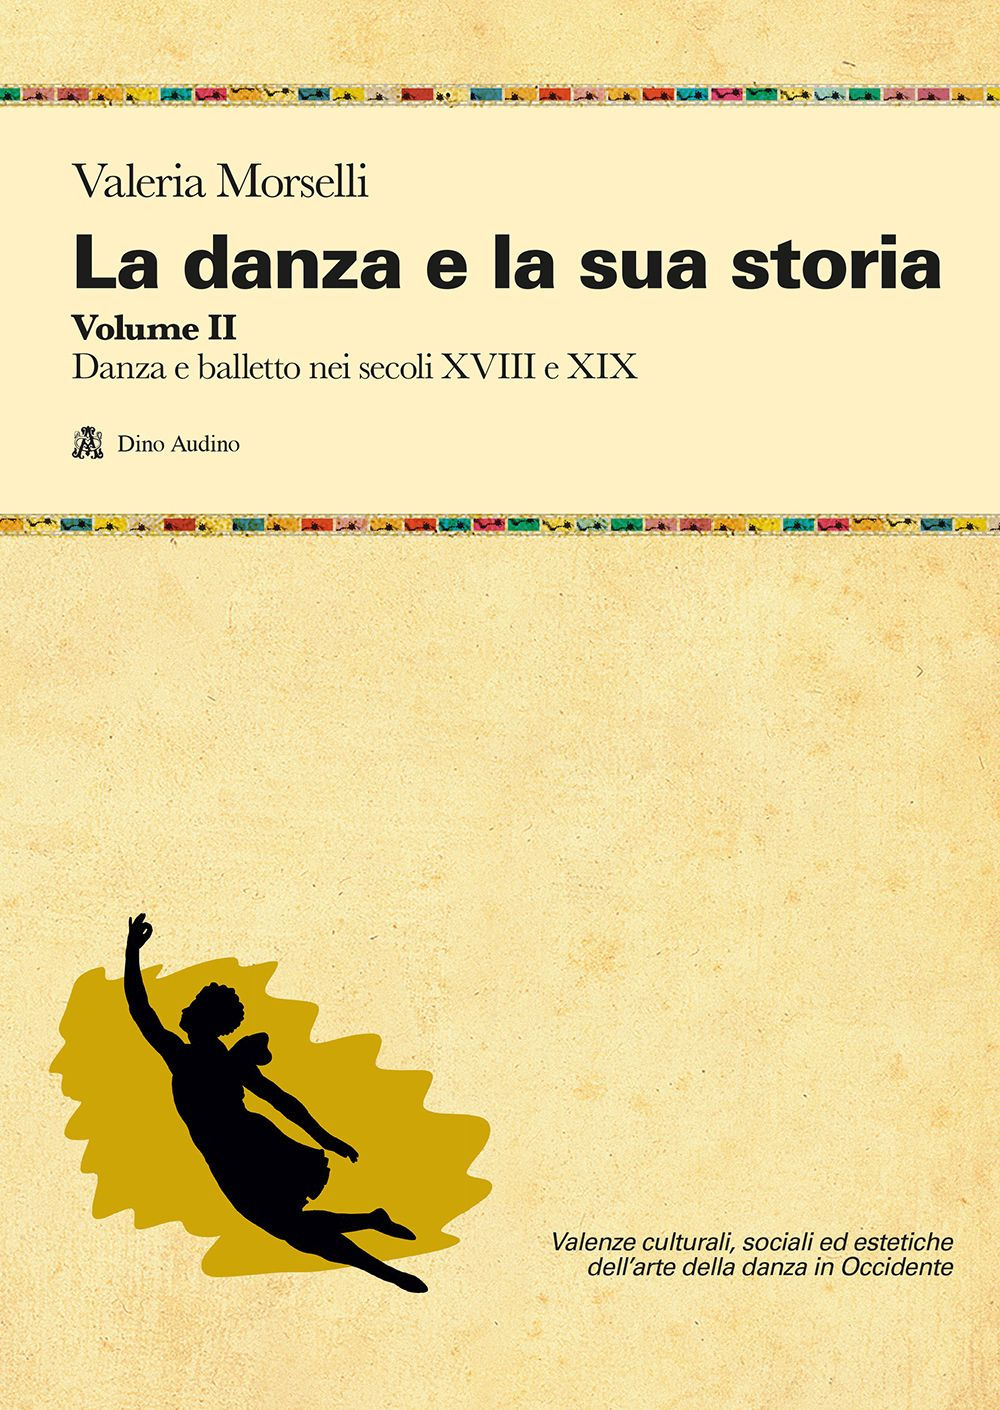 La danza e la sua storia. Valenze culturali, sociali ed estetiche dell'arte della danza in Occidente. Vol. 2: Danza e balletto nei secoli XVIII e XIX